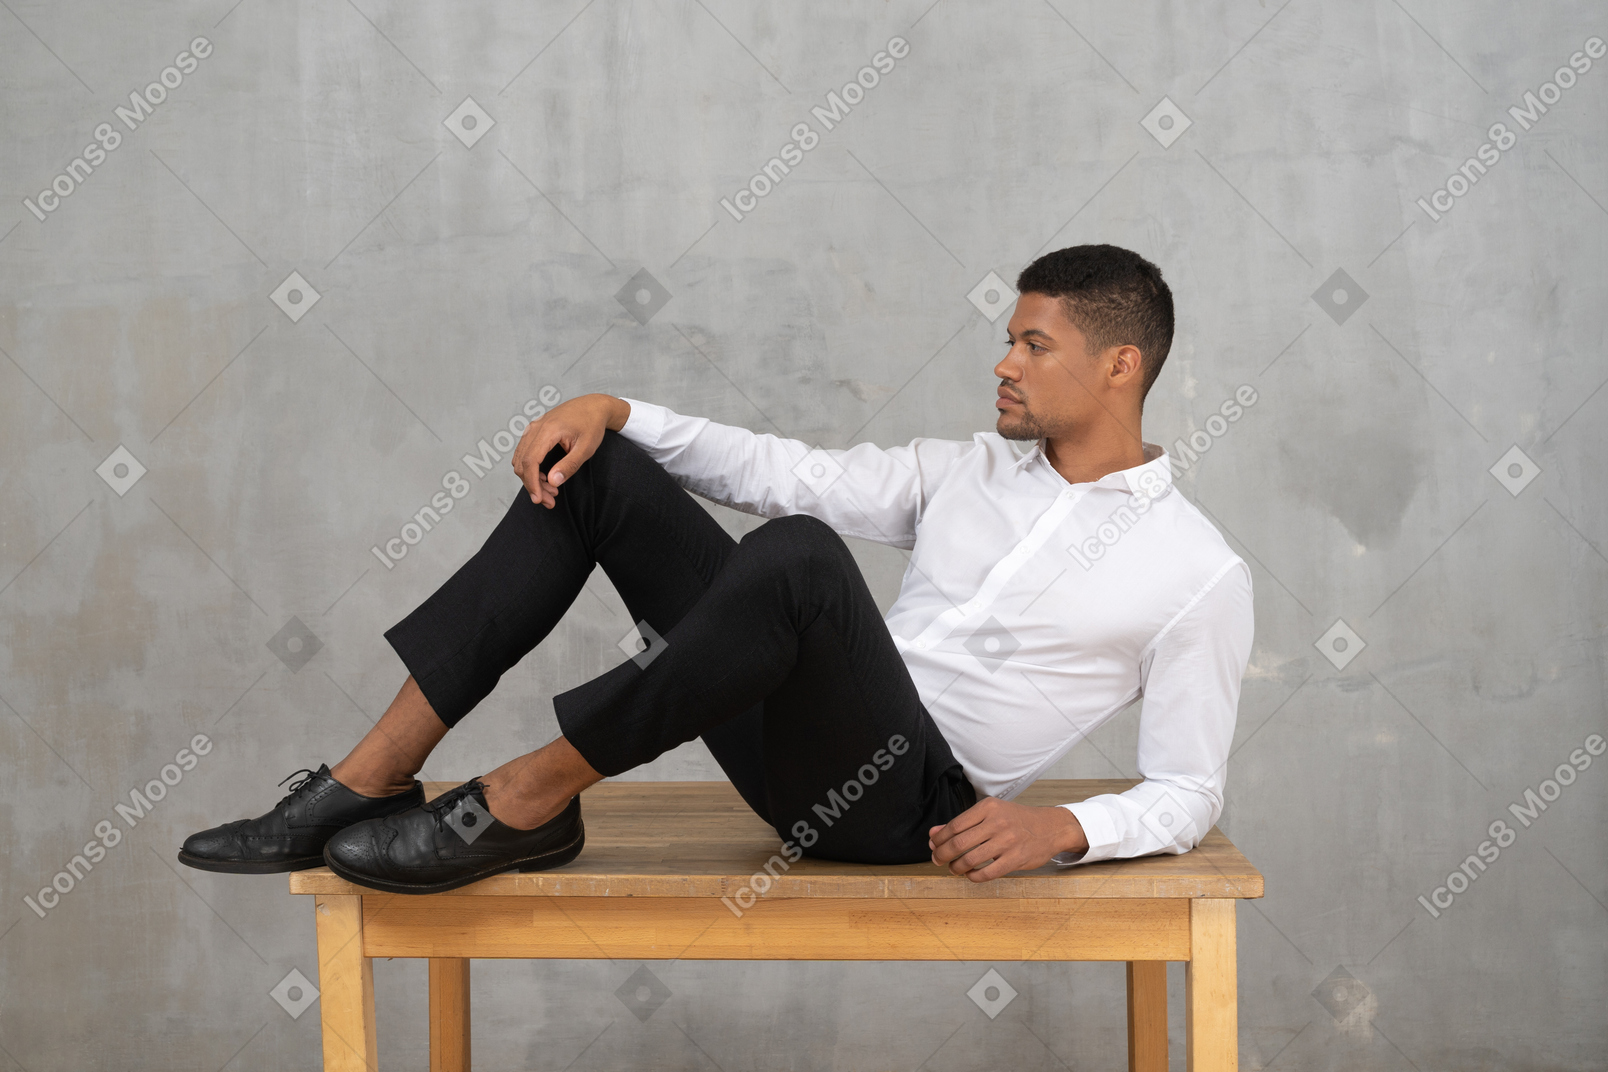 Мужчина в формальной одежде лежит на столе